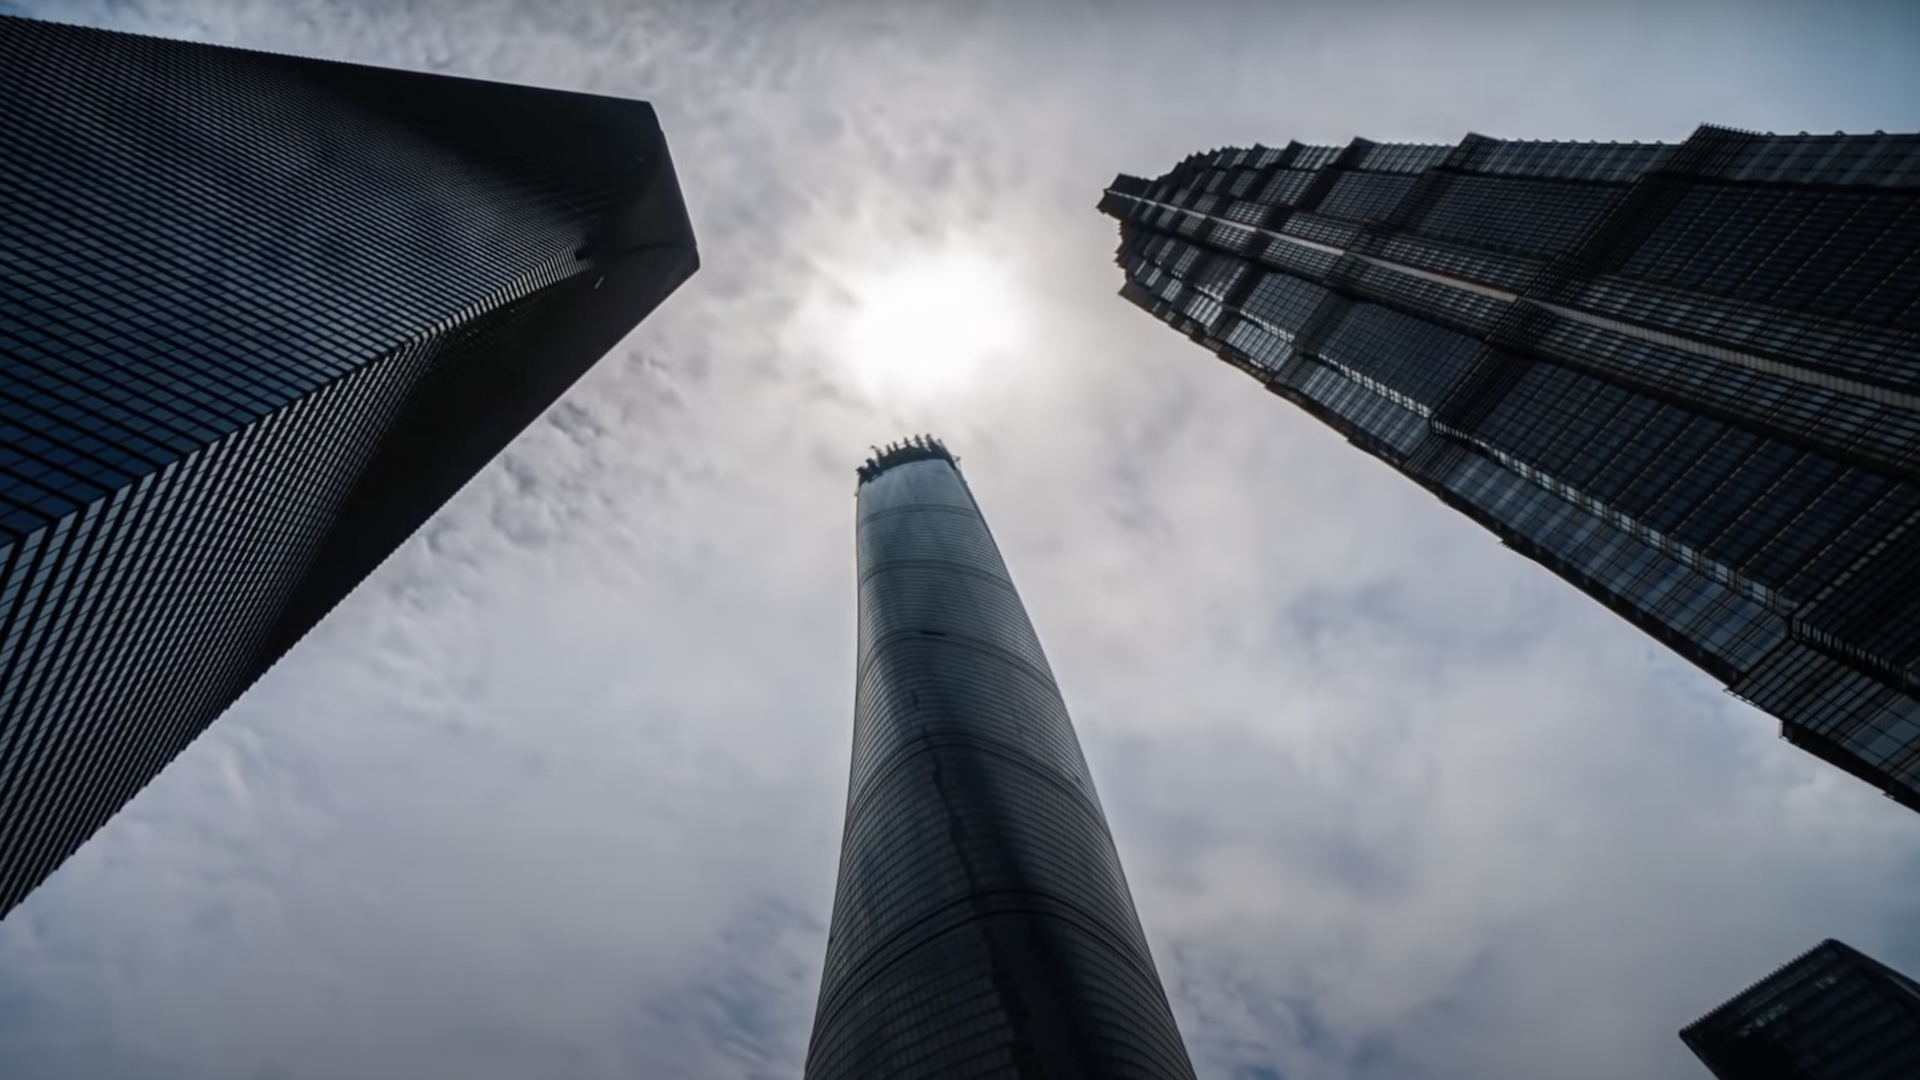 Son los rascacielos más altos los edificios más grandes del mundo? Video —  